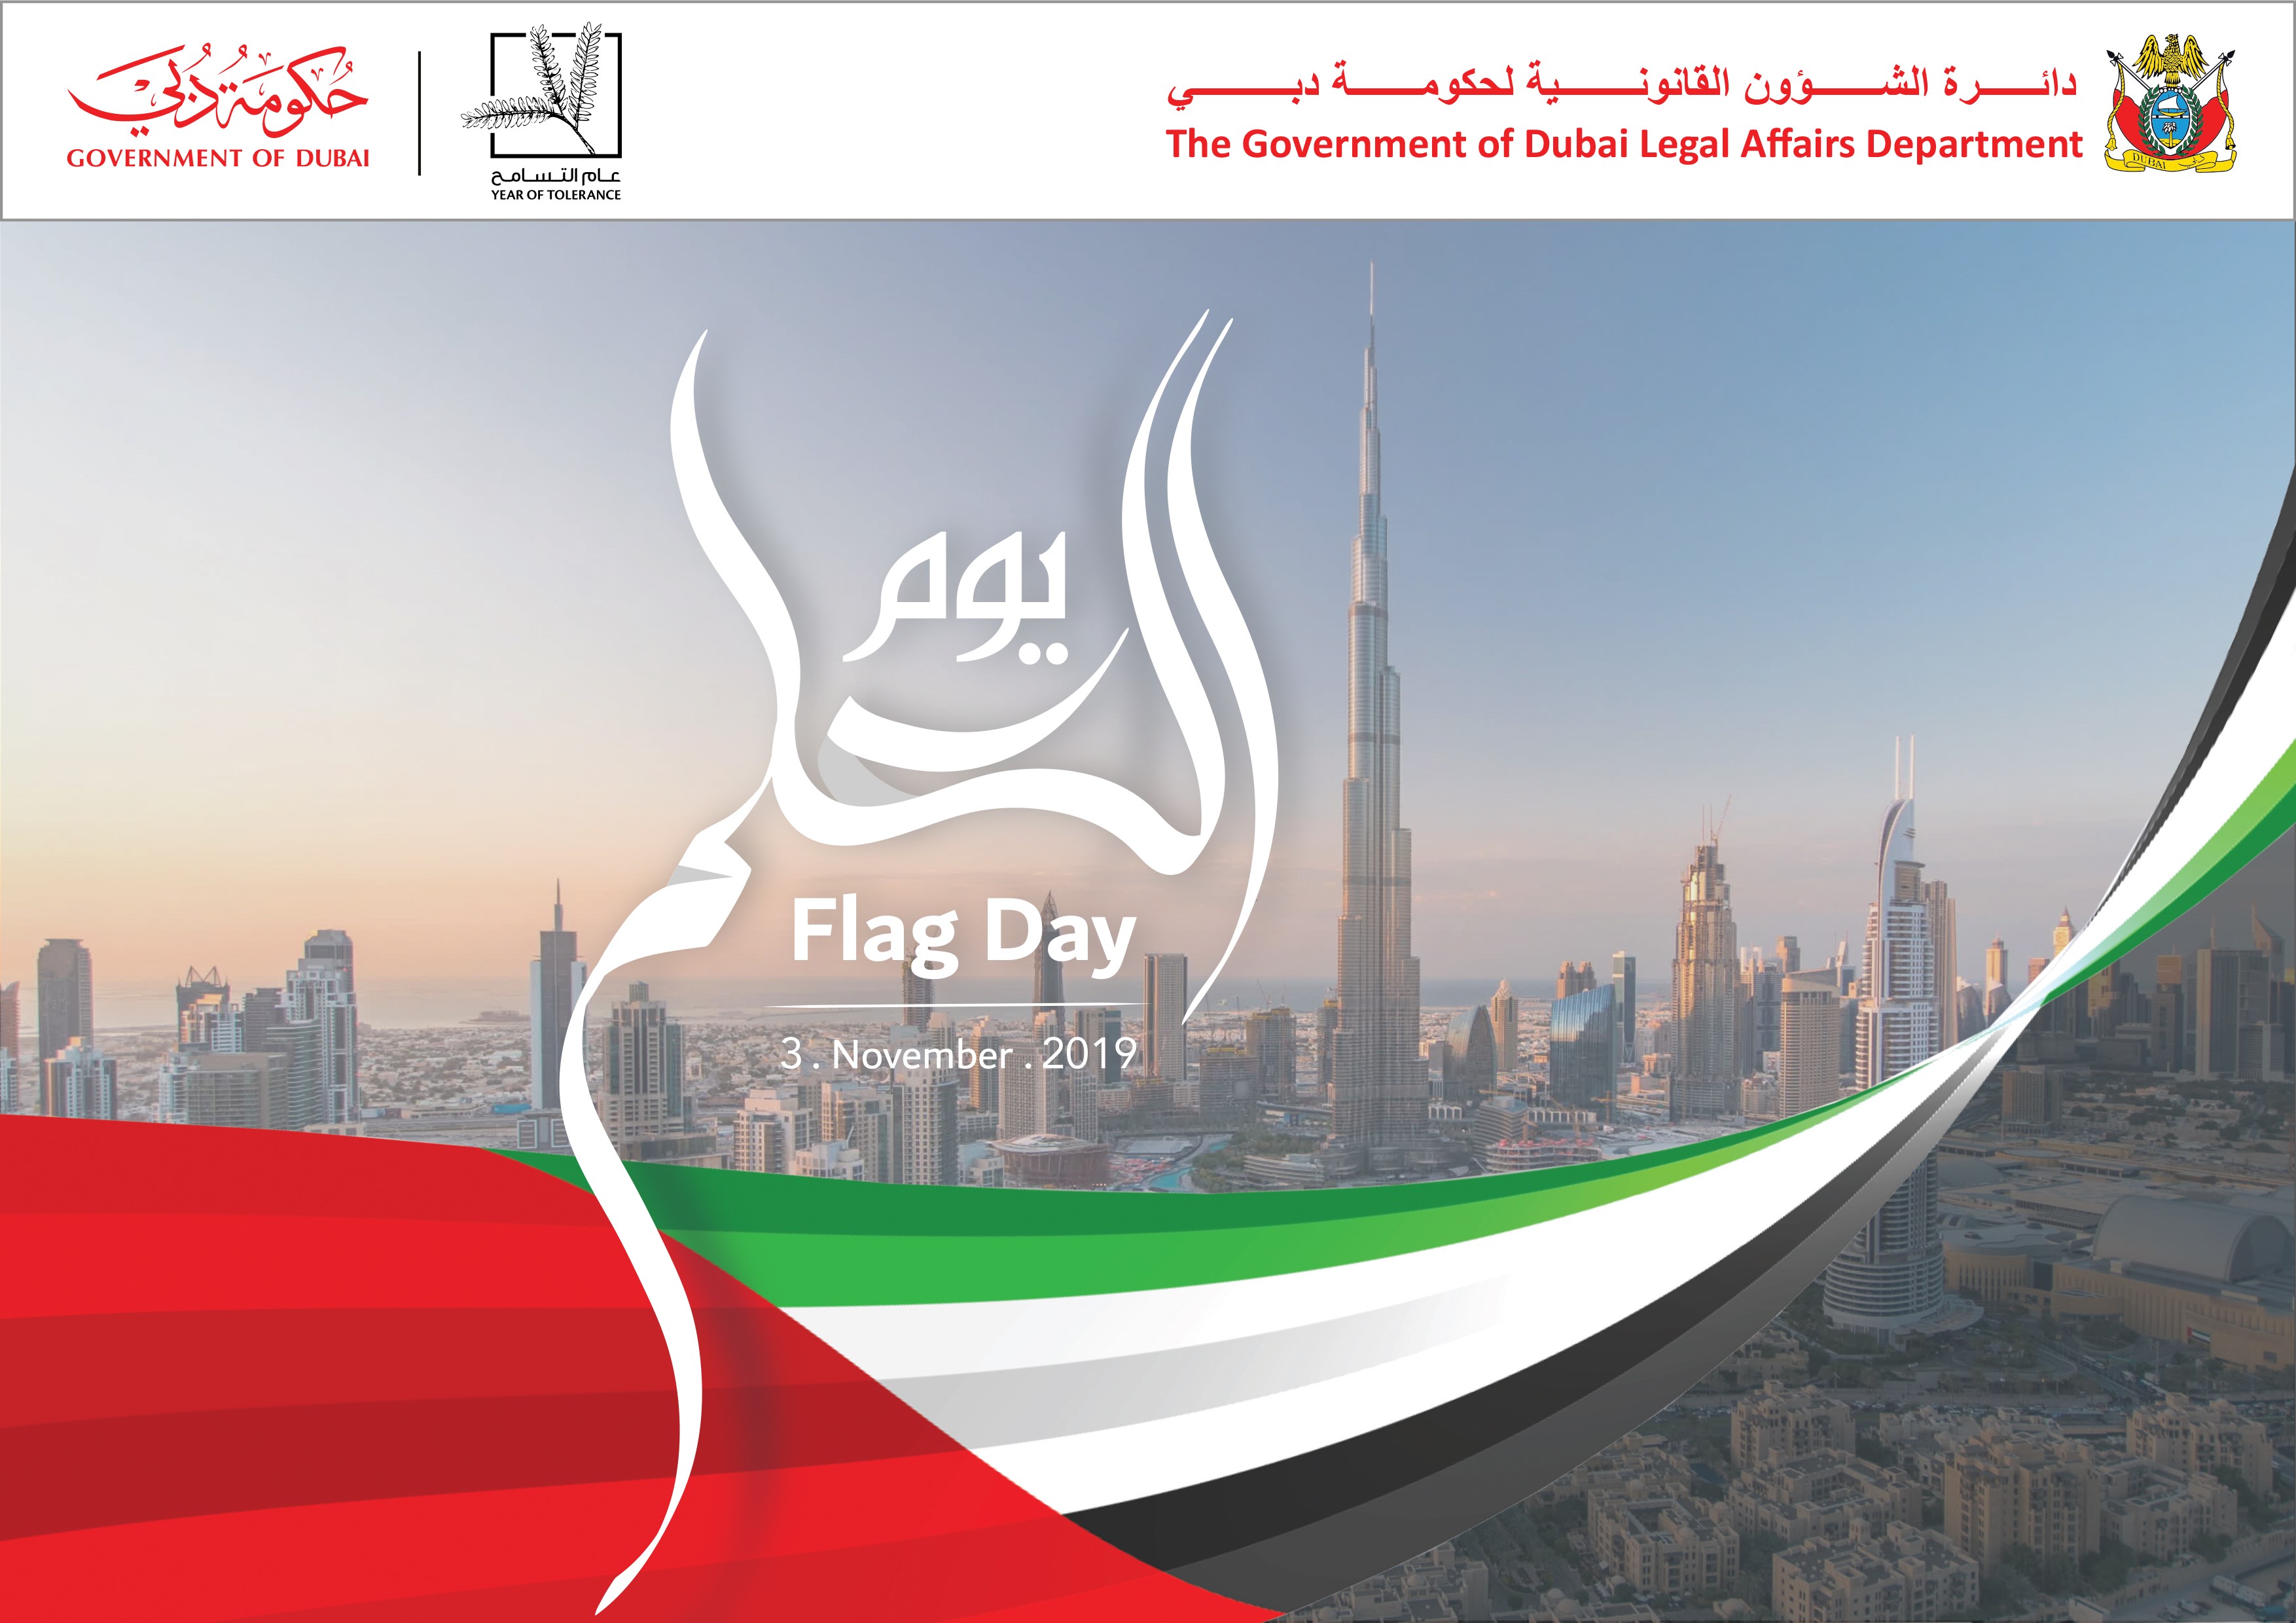 تصريح سعادة الدكتور لؤي محمد بالهول مدير عام دائرة الشؤون القانونية لحكومة دبي بمناسبة الاحتفال بيوم العلم